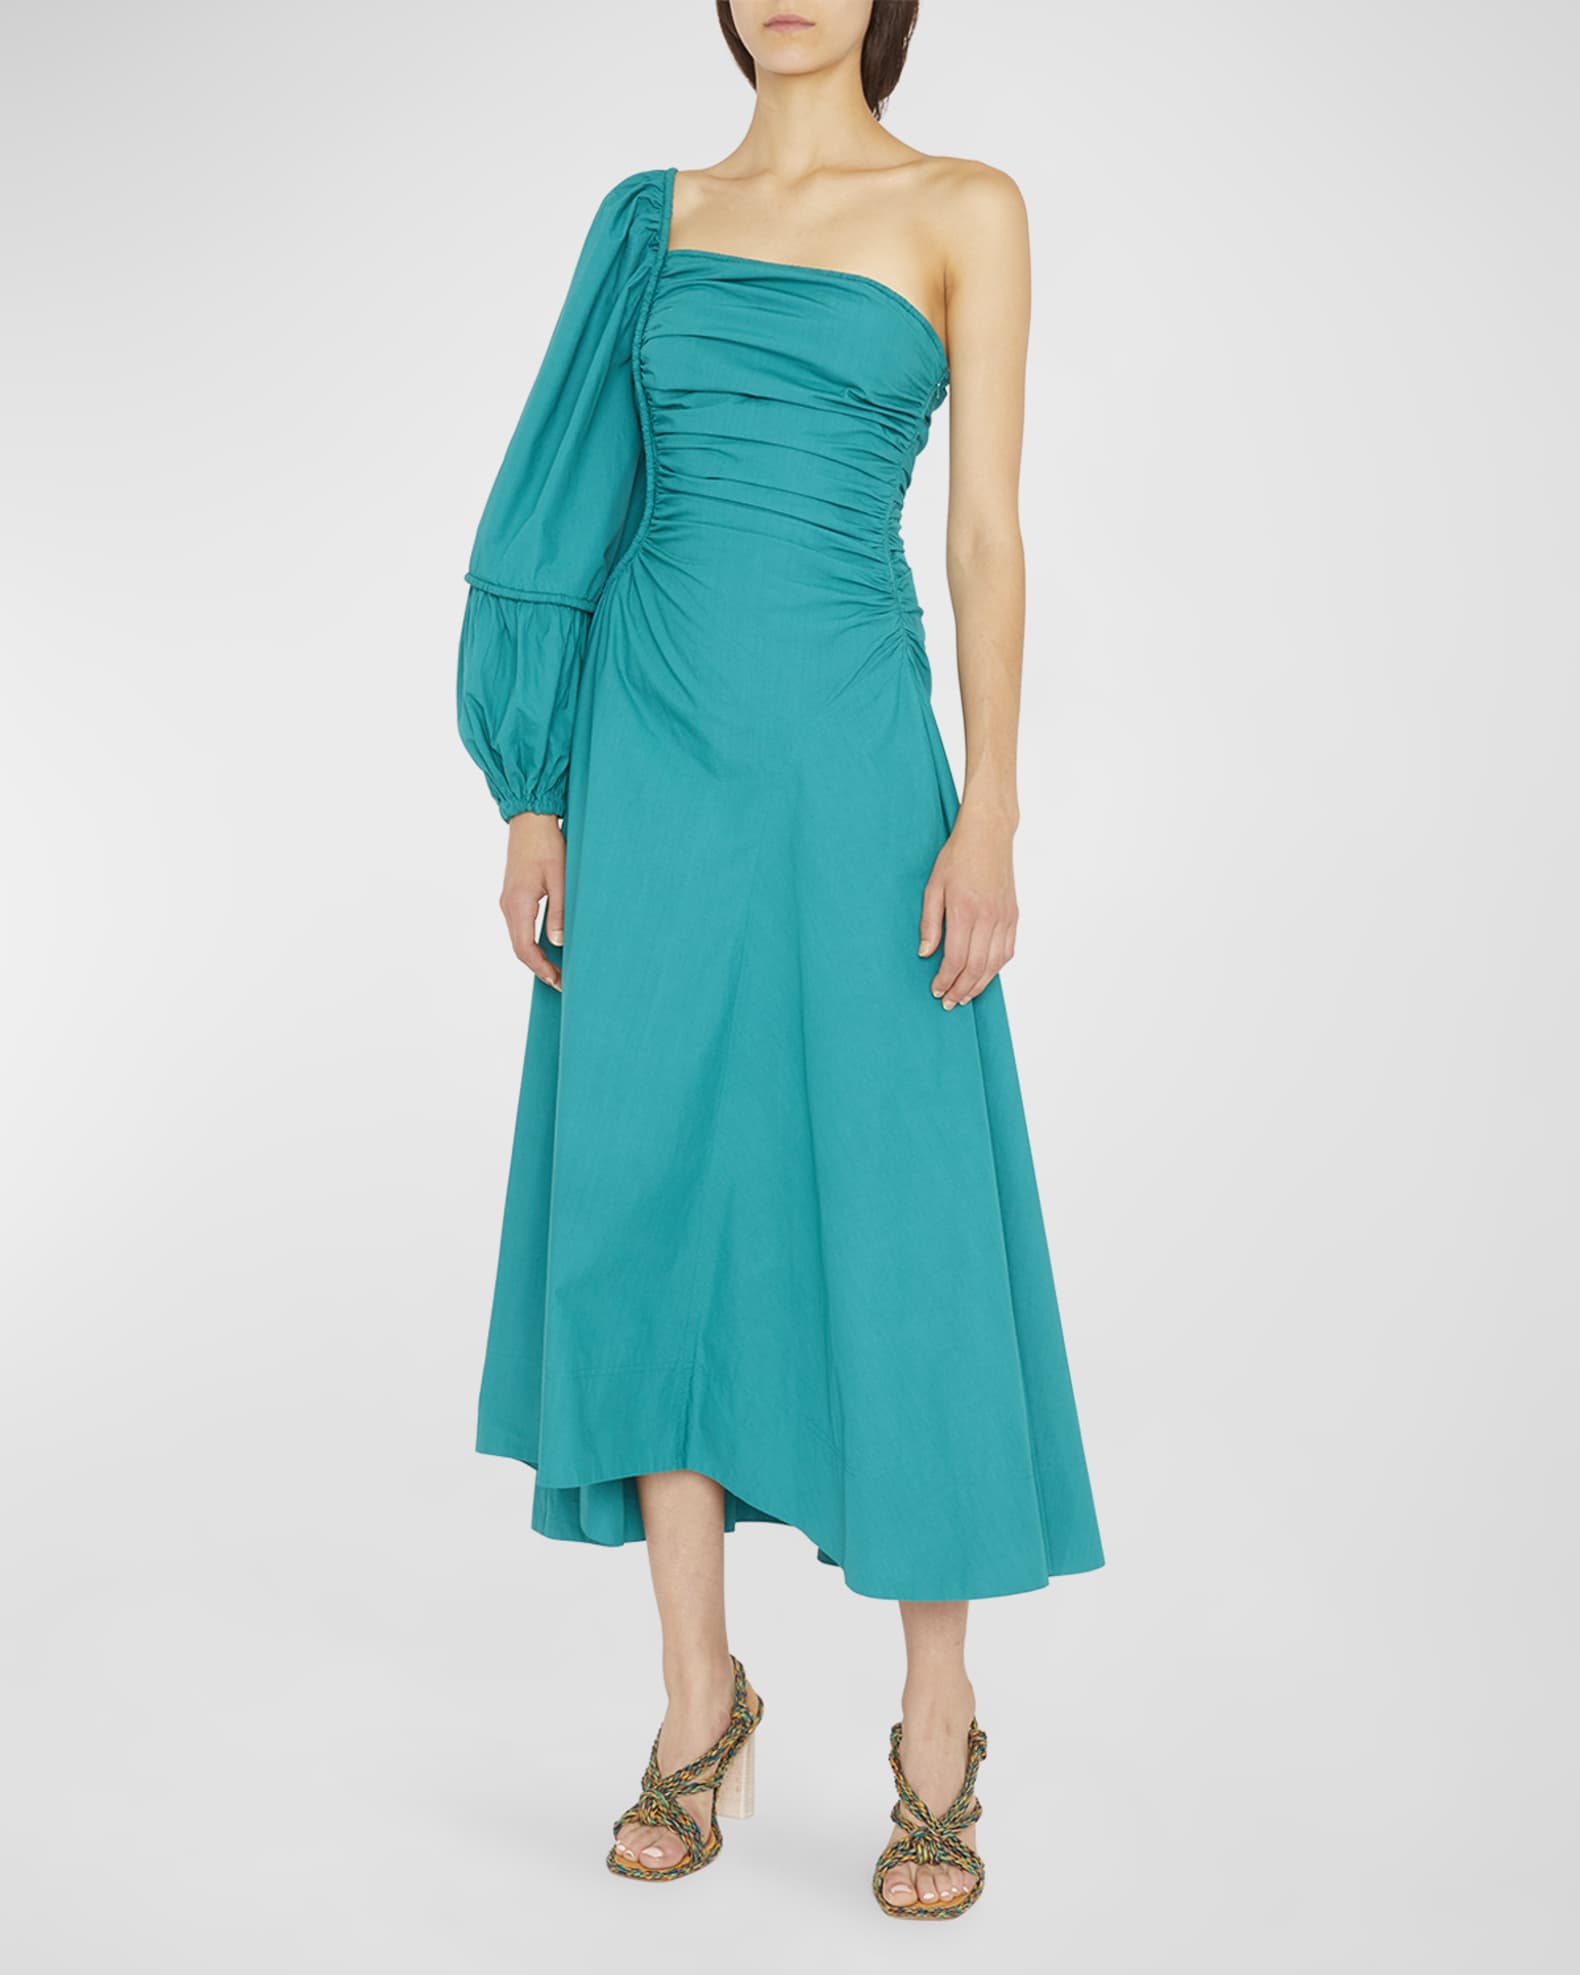 Ulla Johnson Fiorella One-Shoulder Pintuck Midi Dress | Neiman Marcus